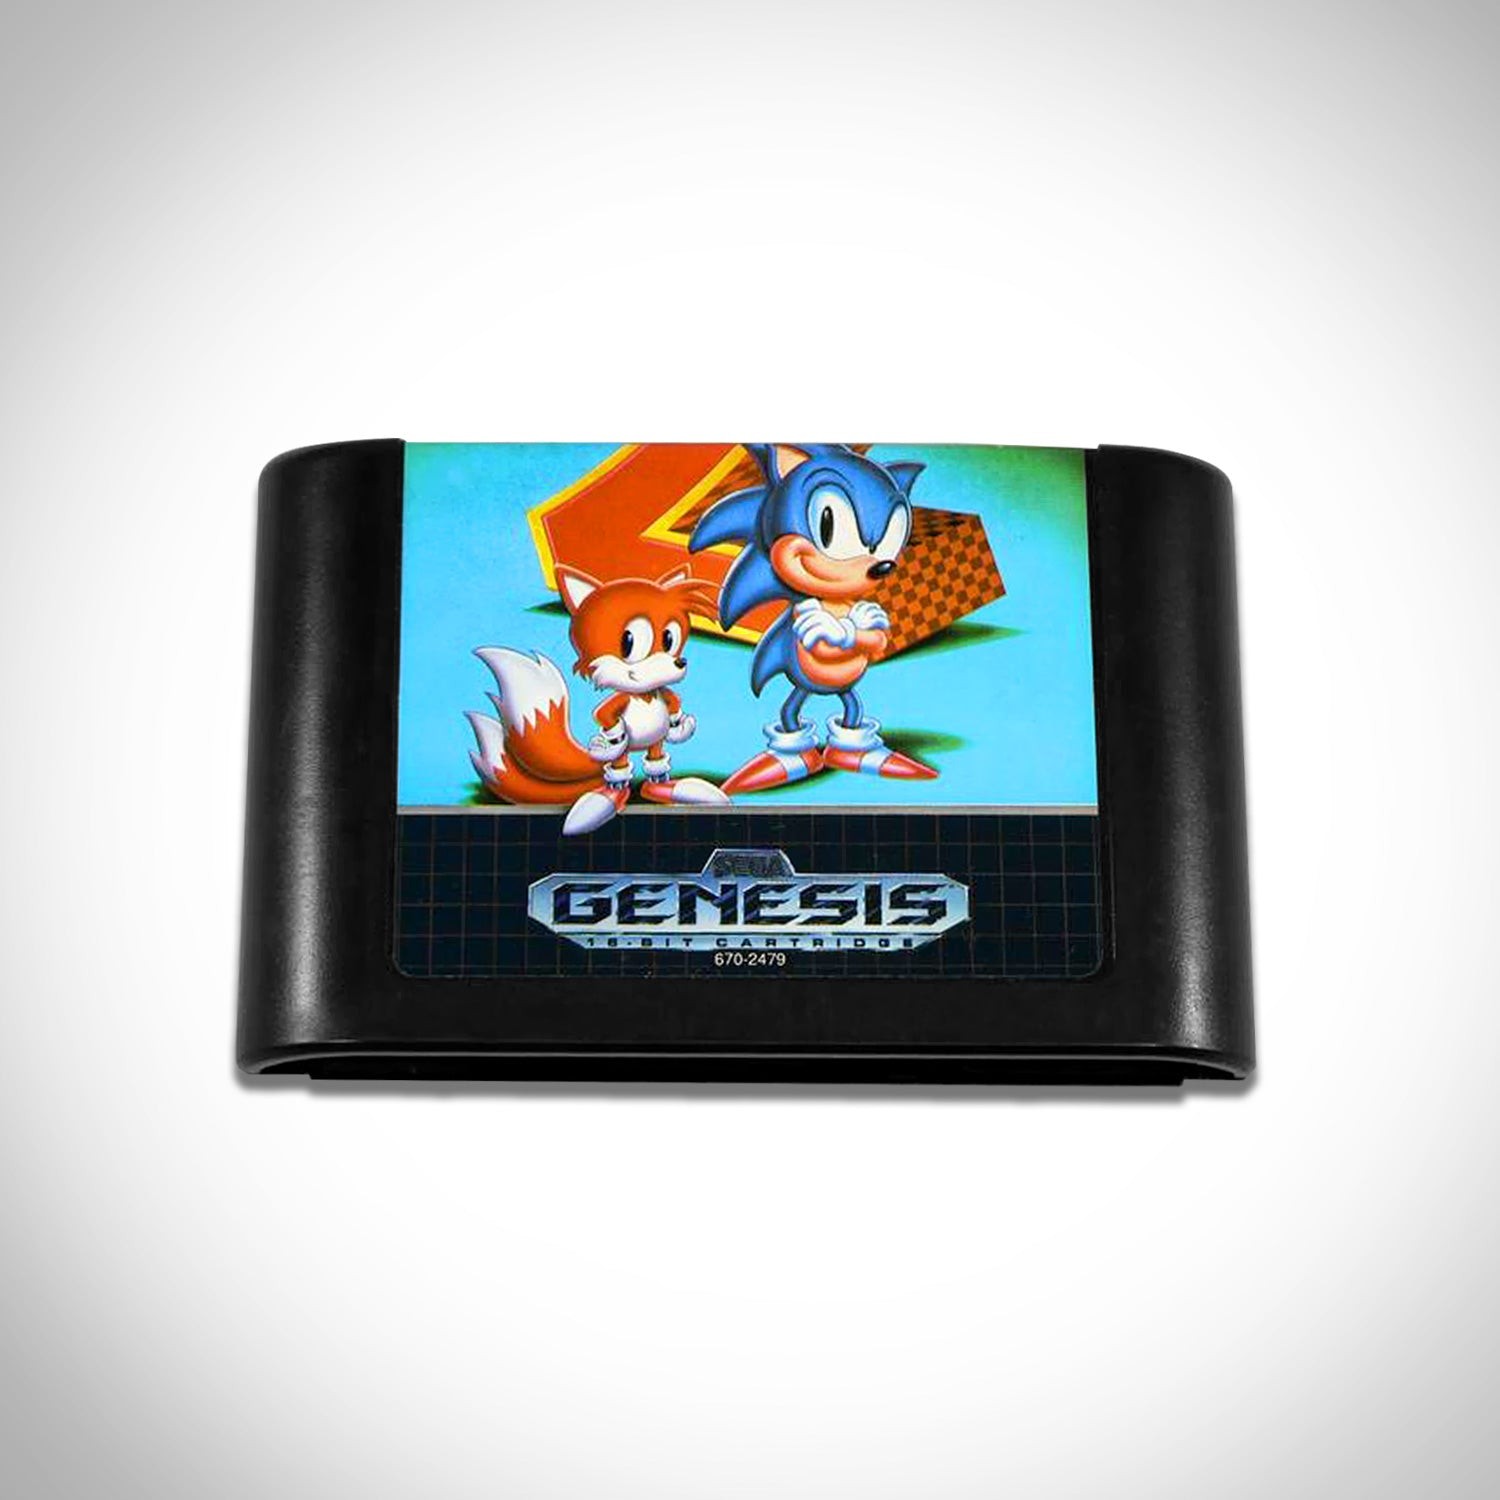 Buy Sonic the Hedgehog 2 Title shadow Box Sega Genesis Art Online in India  